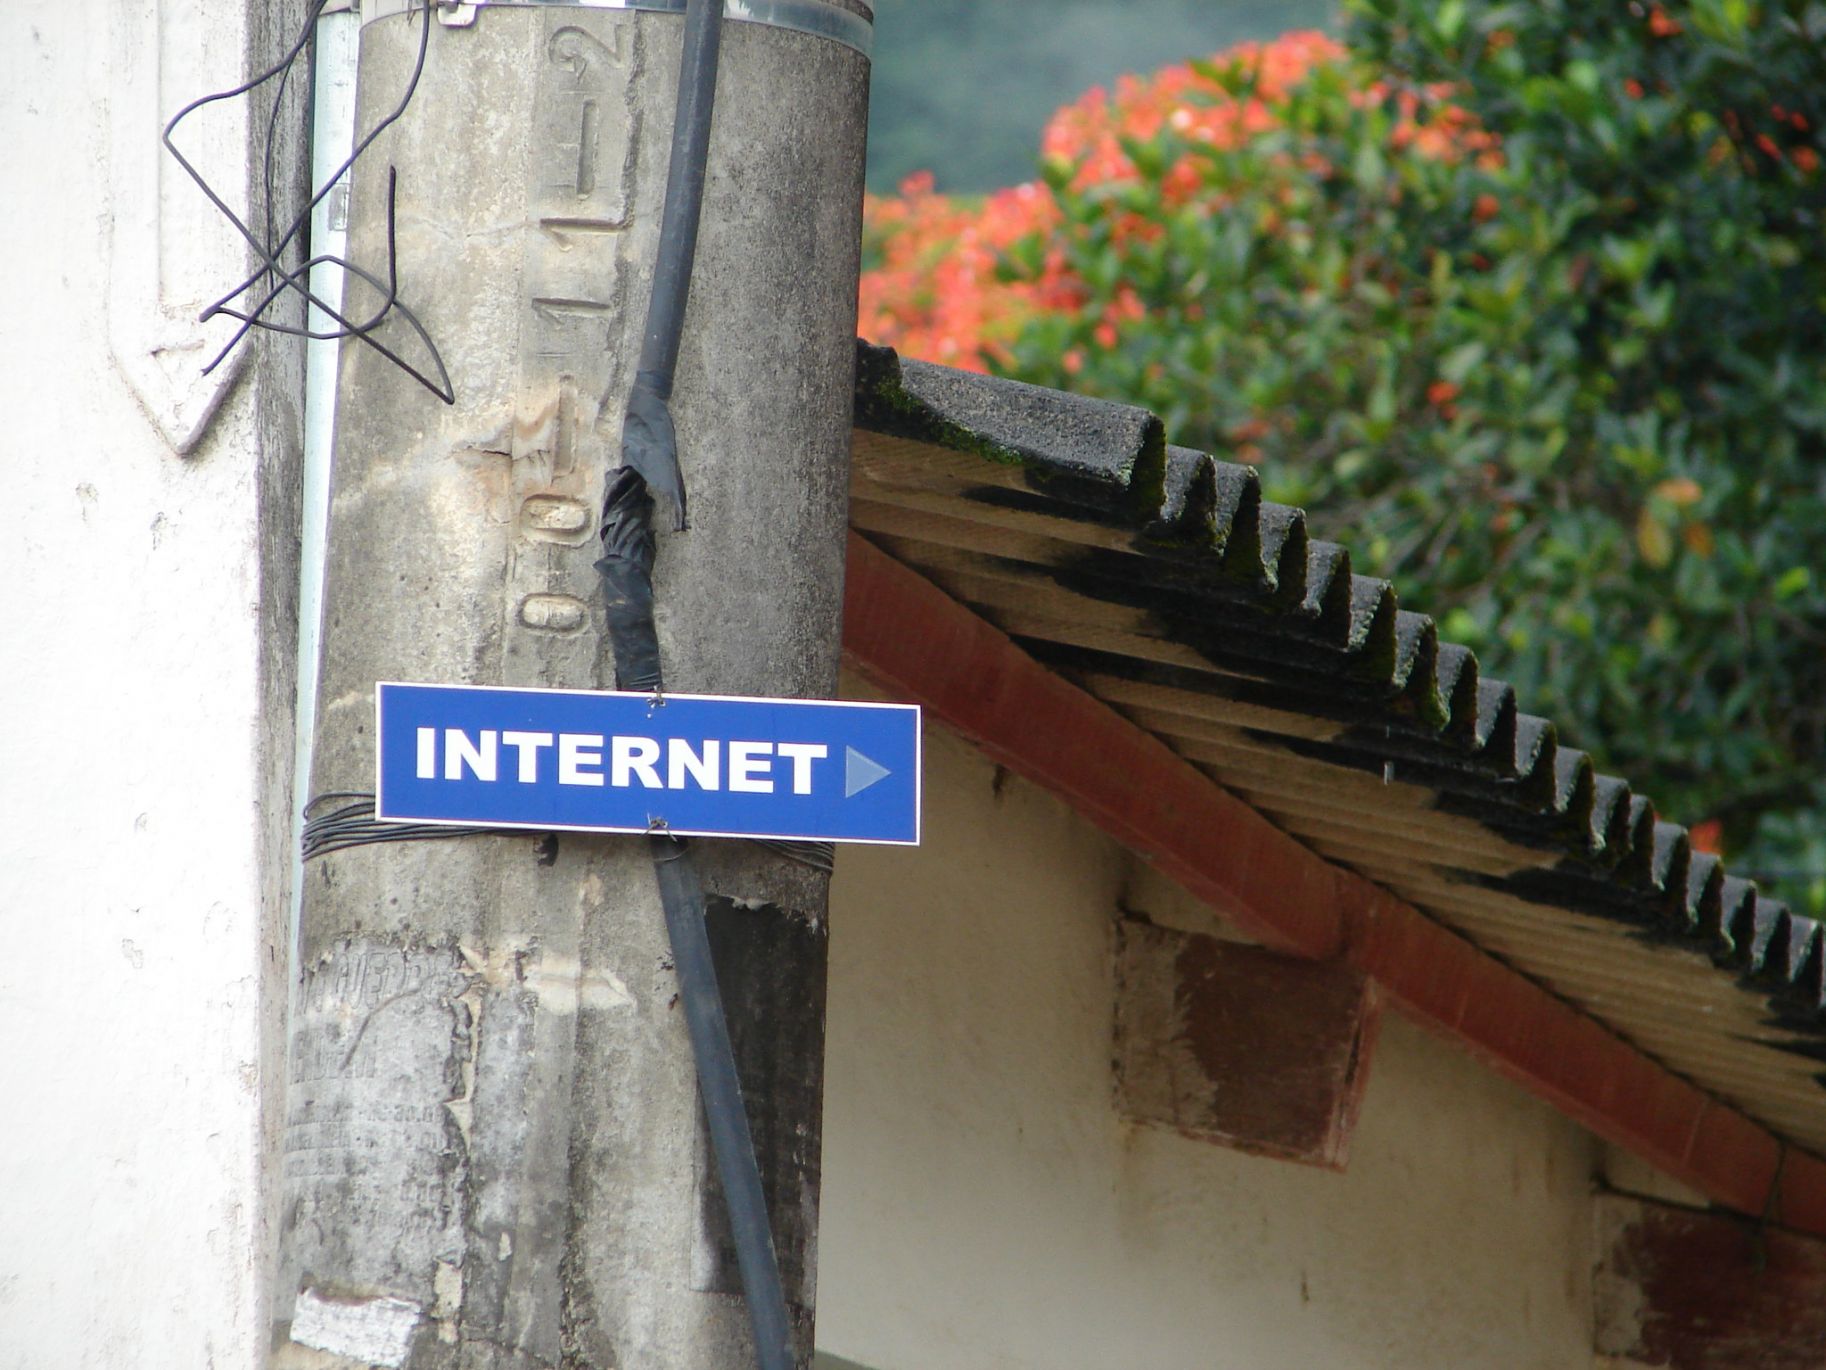 Ціна на широкосмуговий провідний інтернет в Україні виявилась найменшою у світі